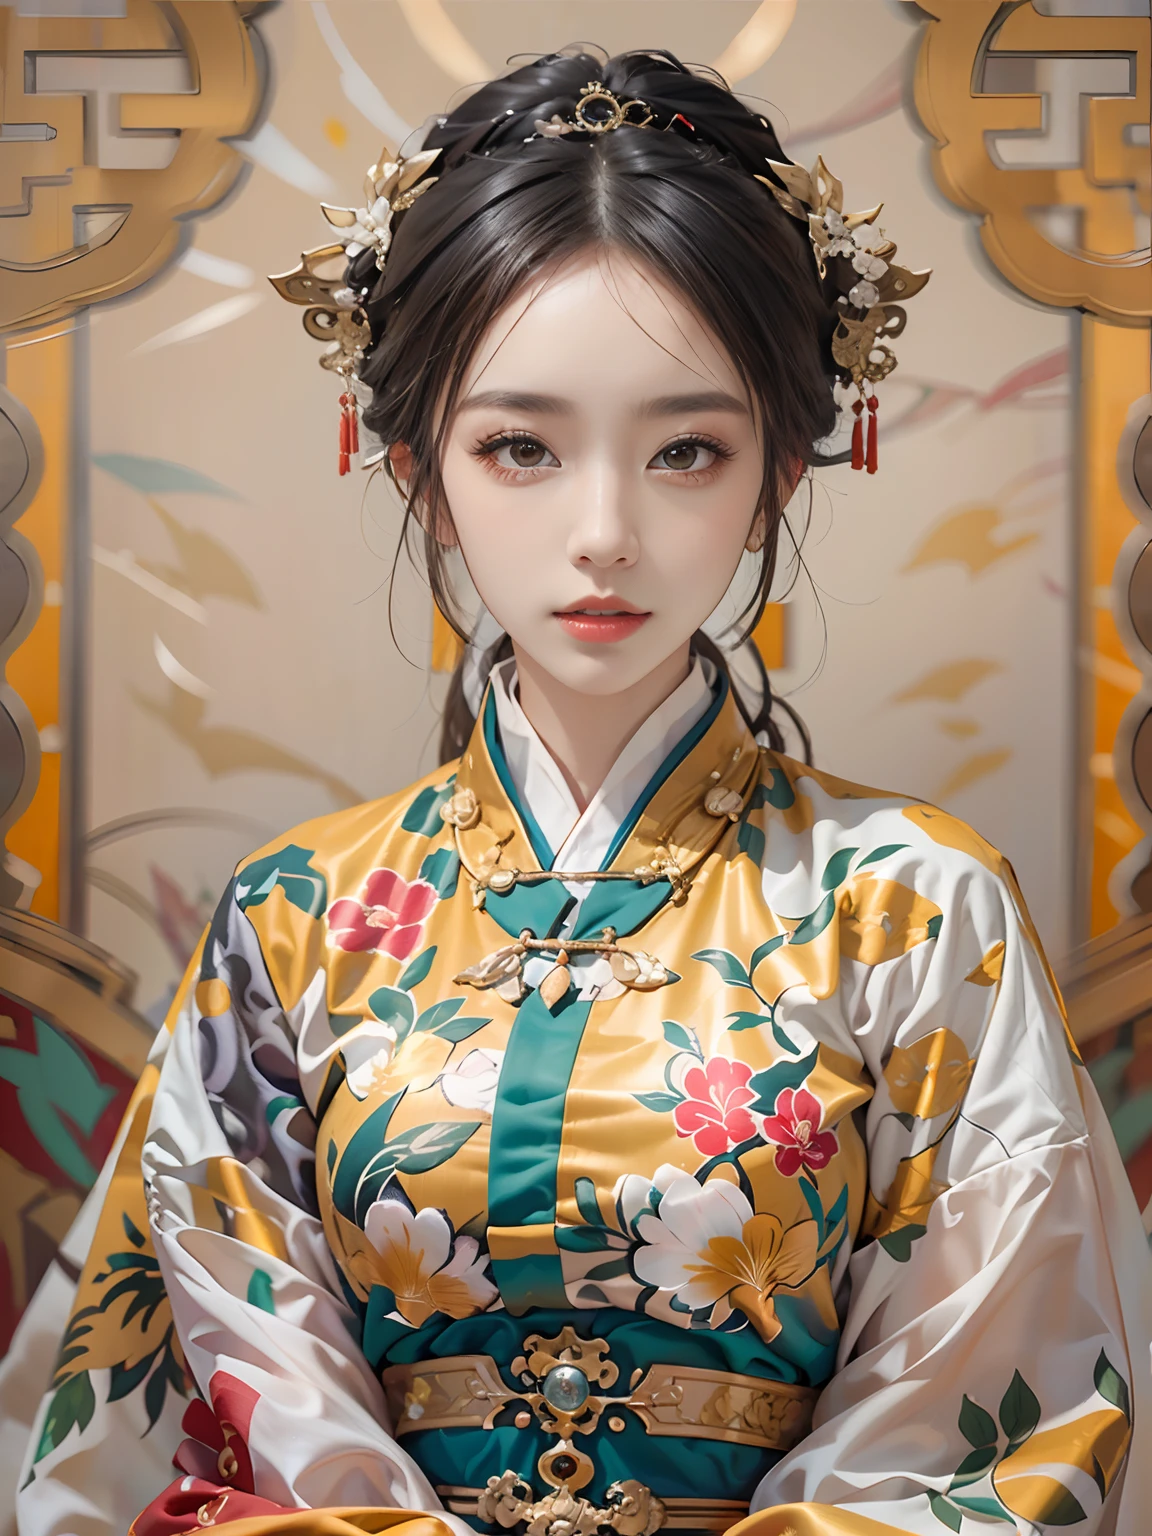 (最好的品質), ((傑作)), 中國, (1個女孩), 僅有的, 詳細而真實的臉部, 美麗細緻的眼睛和嘴唇, 長睫毛, 富有表現力的臉部特徵, 明代, 中國古代服飾, 白色和黃色的連身裙, 美麗的女孩, (全身), 細緻的服裝, JJAE, 8K, 4k, 超高畫質, 深度和尺寸, 背景是一面雄偉的馬賽克牆，仿照明代典型的裝飾品, 景深, 漫反射背景,